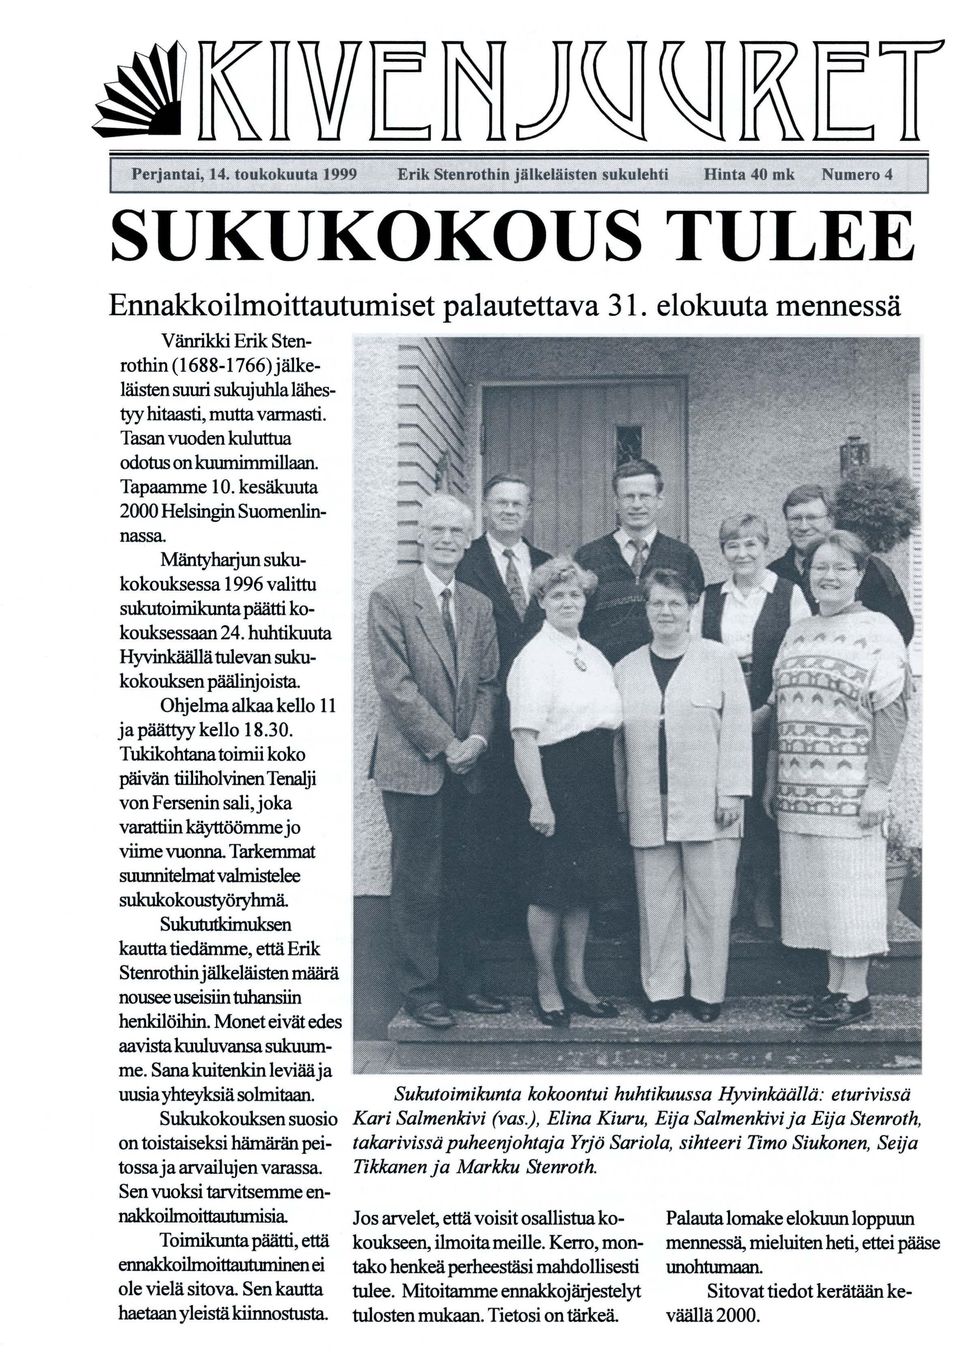 kesäkuuta 2000 Helsingin Suomenlinnassa Mäntyhrujun sukukokouksessa 1996 valittu sukutoimikunta päätti kokouksessaan 24. huhtikuuta Hyvinkäällä tulevan sukukokouksen päälinjoista.